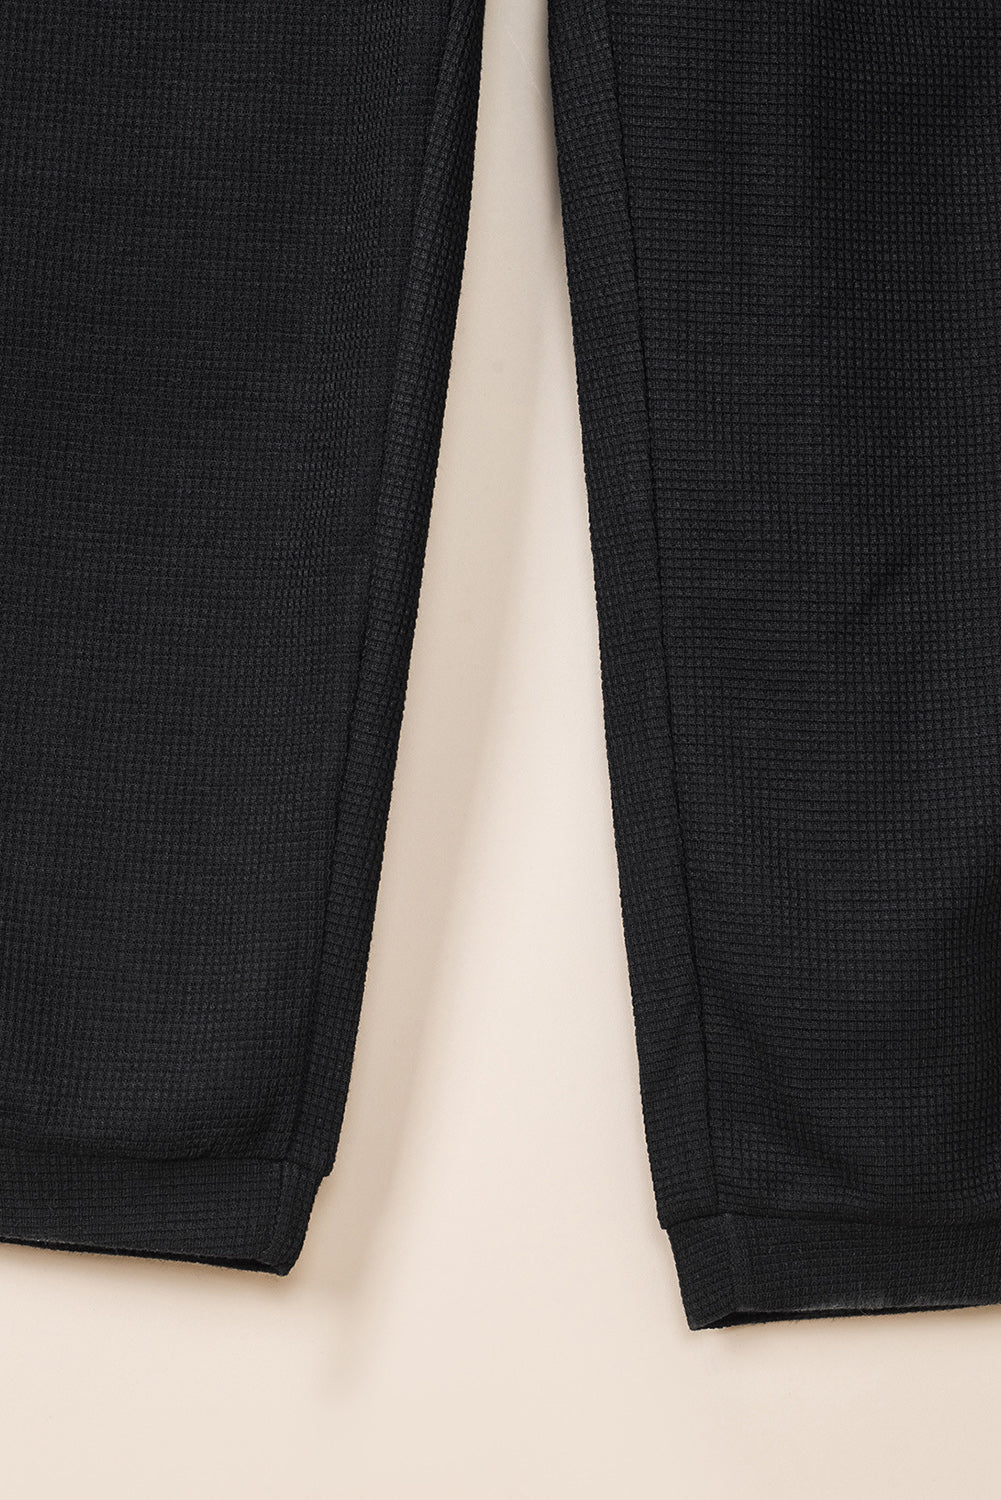 Črn teksturiran kombinezon brez rokavov z žepi in v-izrezom